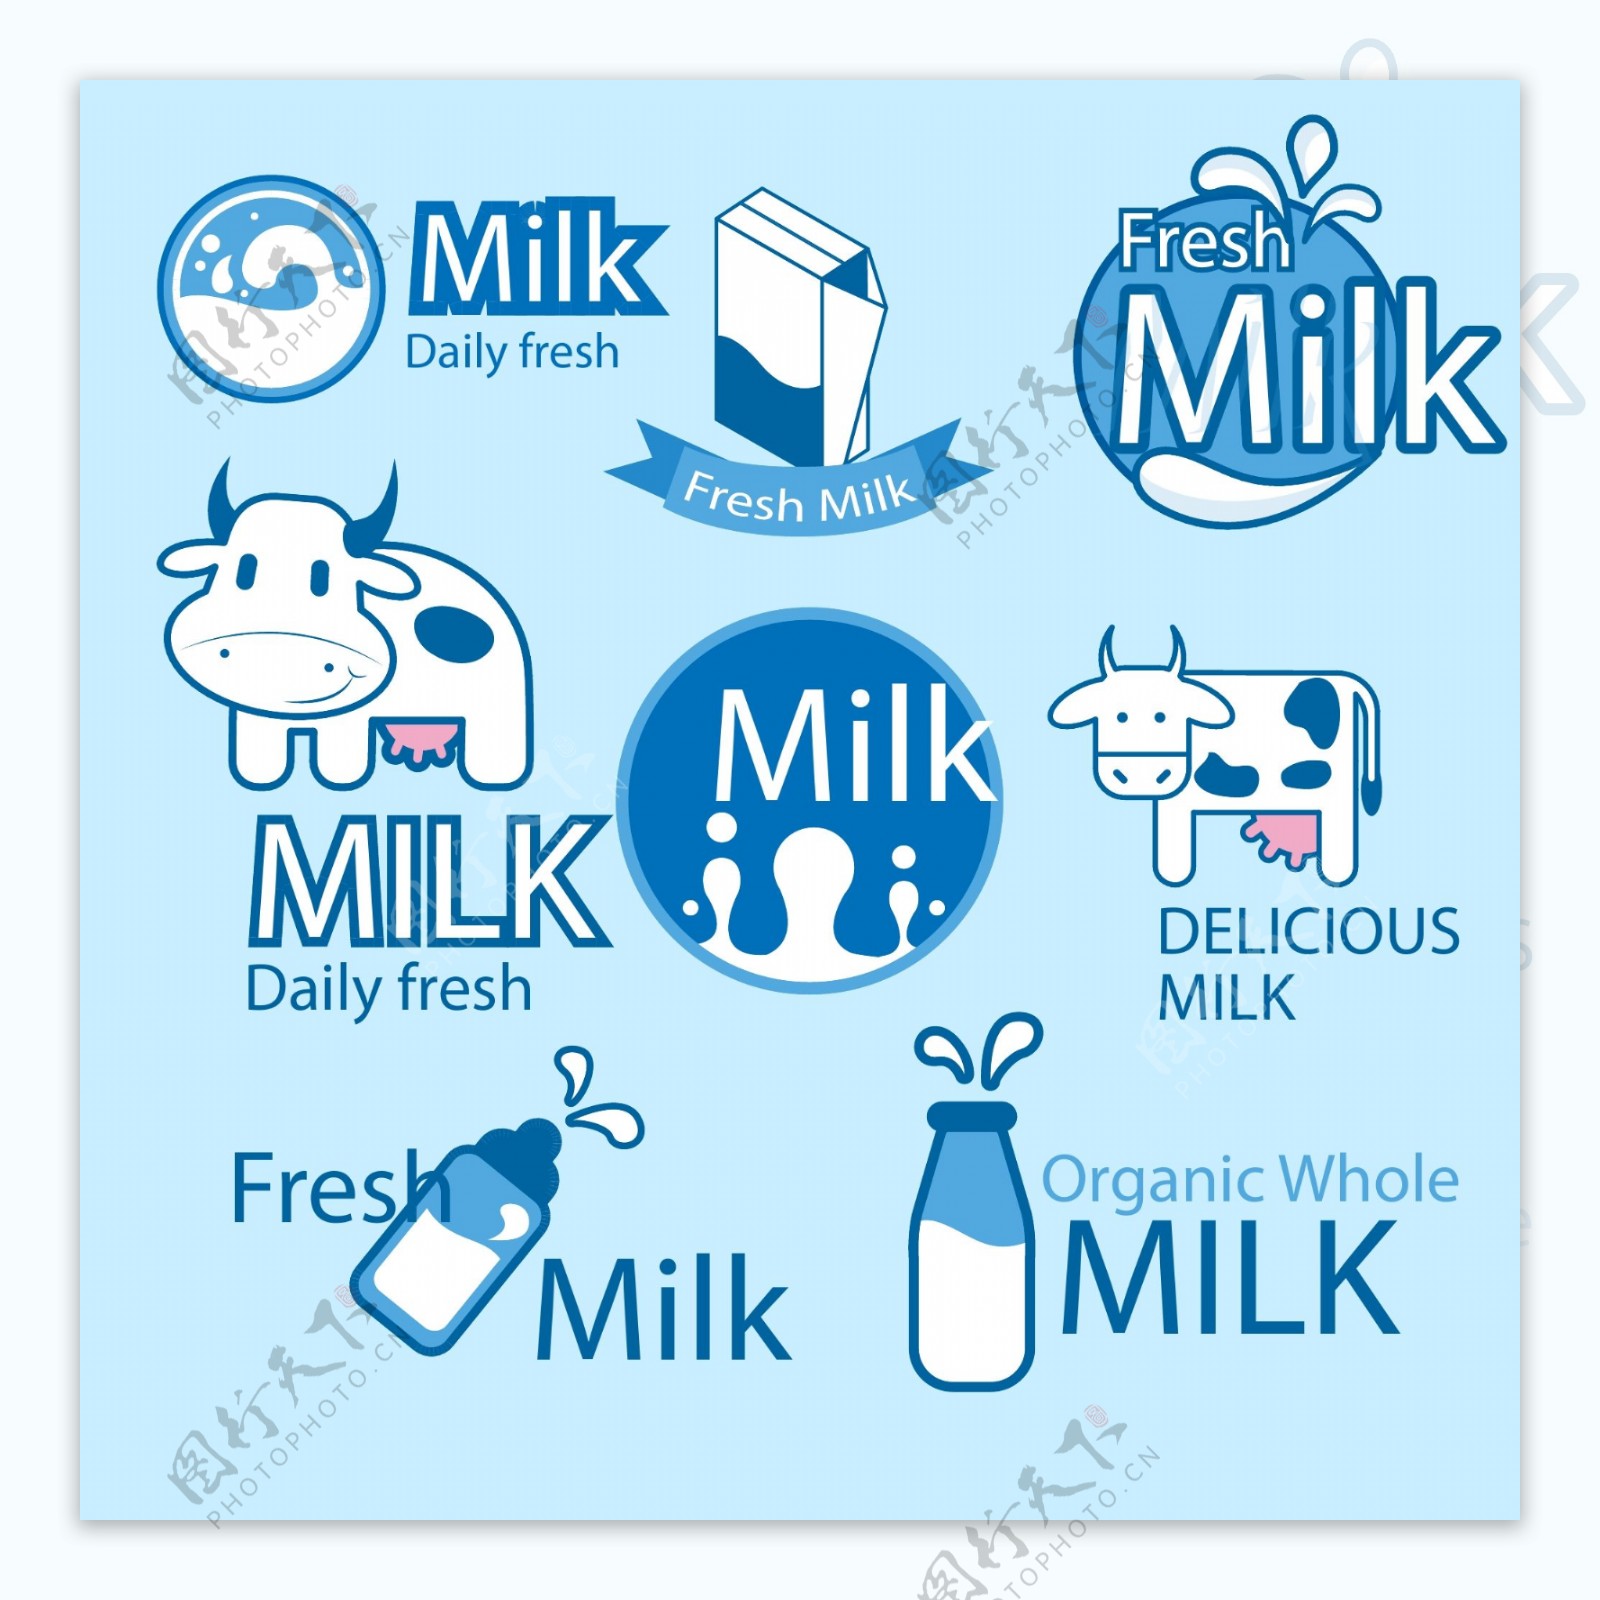 鲜奶包装标签